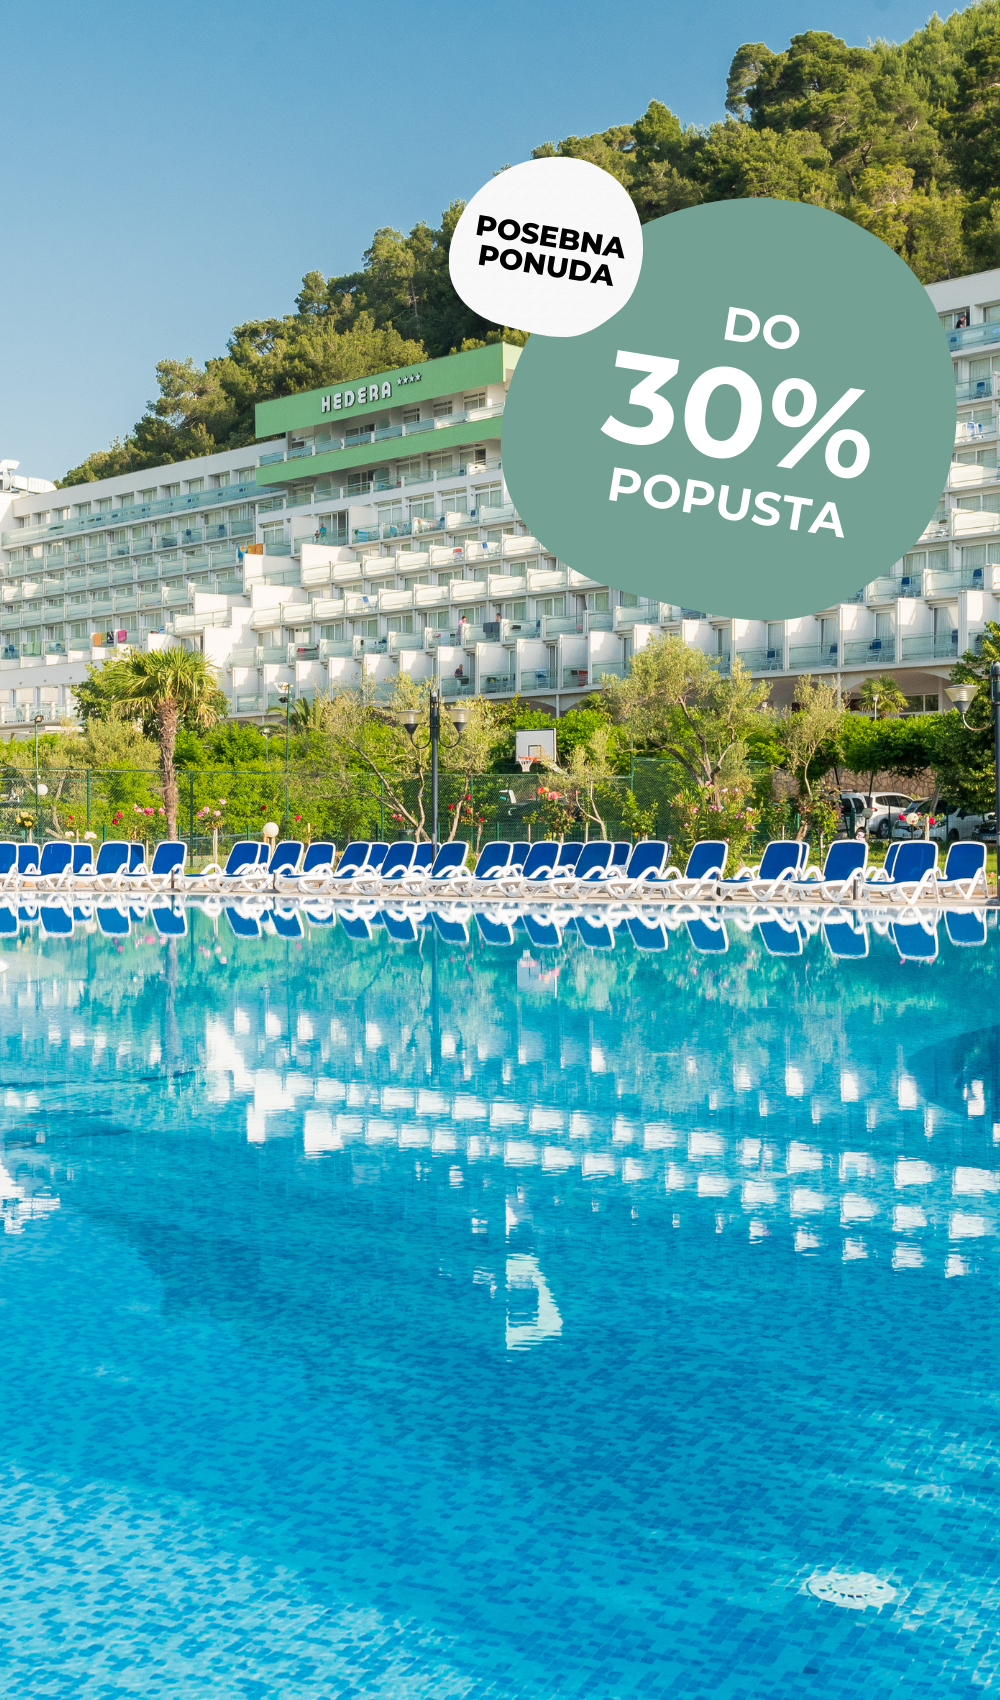 Hotel Hedera je pravo mjesto za obiteljski odmor u Hrvatskoj. Ovaj hotel nudi zabavu za cijelu obitelj i raznovrsne aktivnosti. 